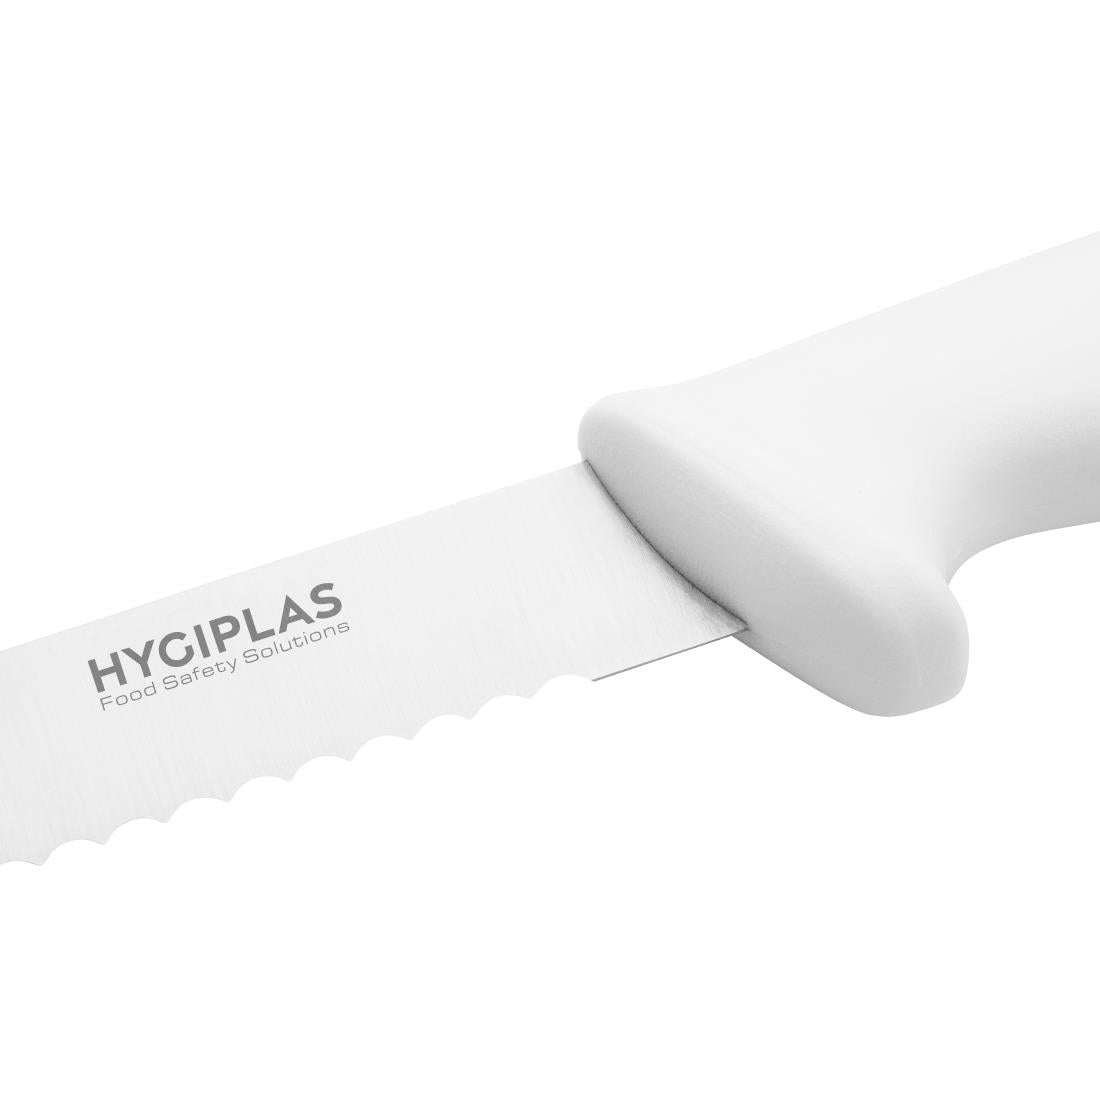 C883 Hygiplas Serrated Slicer White 25.5cm JD Catering Equipment Solutions Ltd